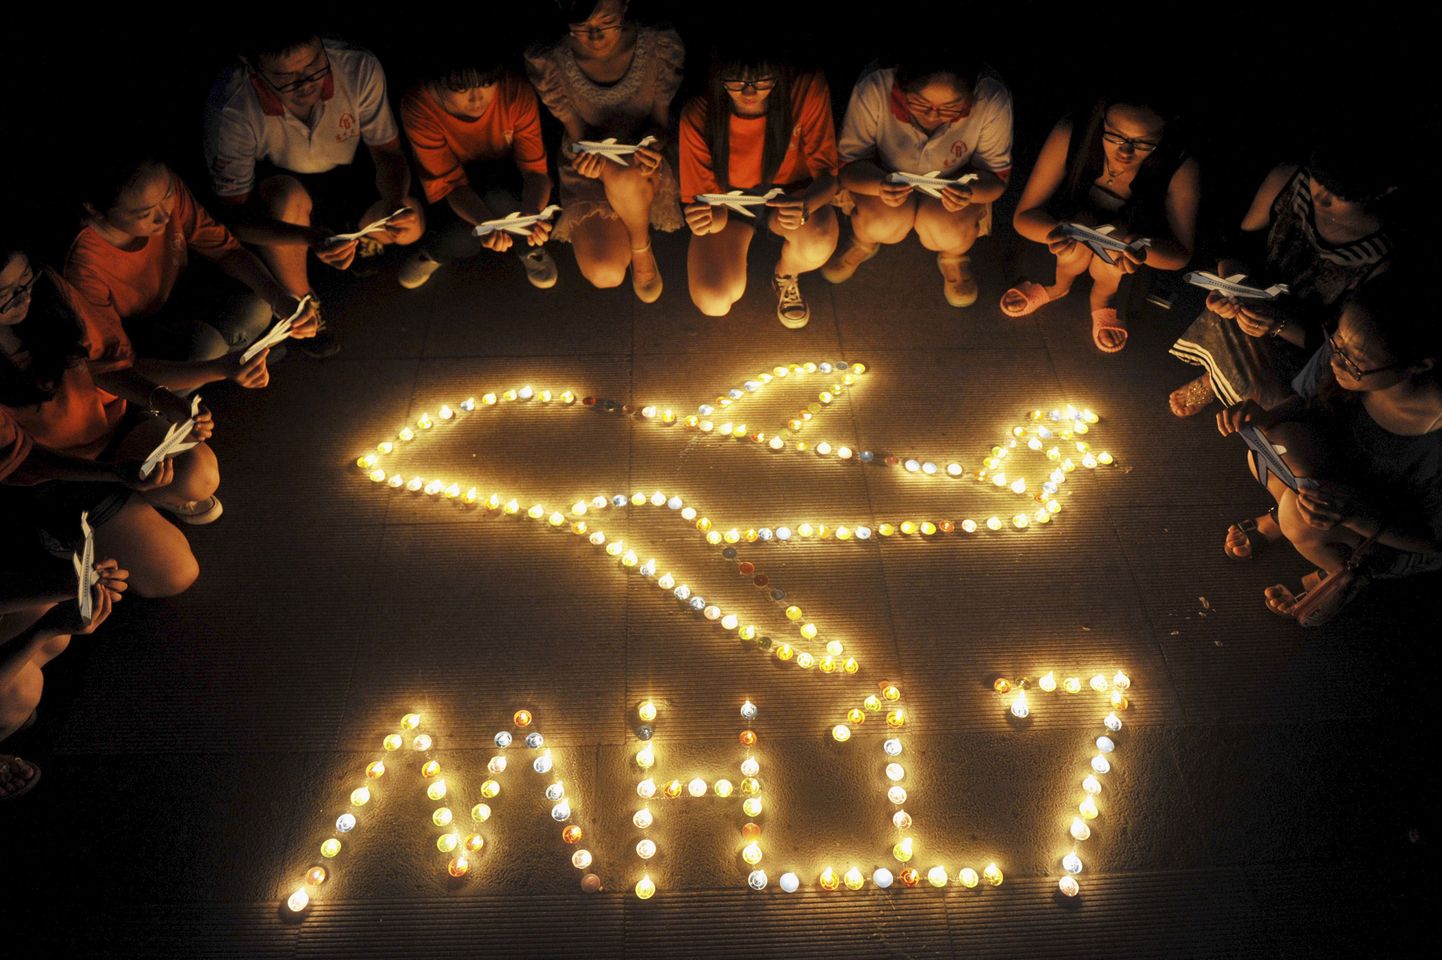 Рейс 17 (MH17) авиакомпании Malaysia Airlines был международным гражданским авиарейсом из Амстердама в Куала-Лумпур.